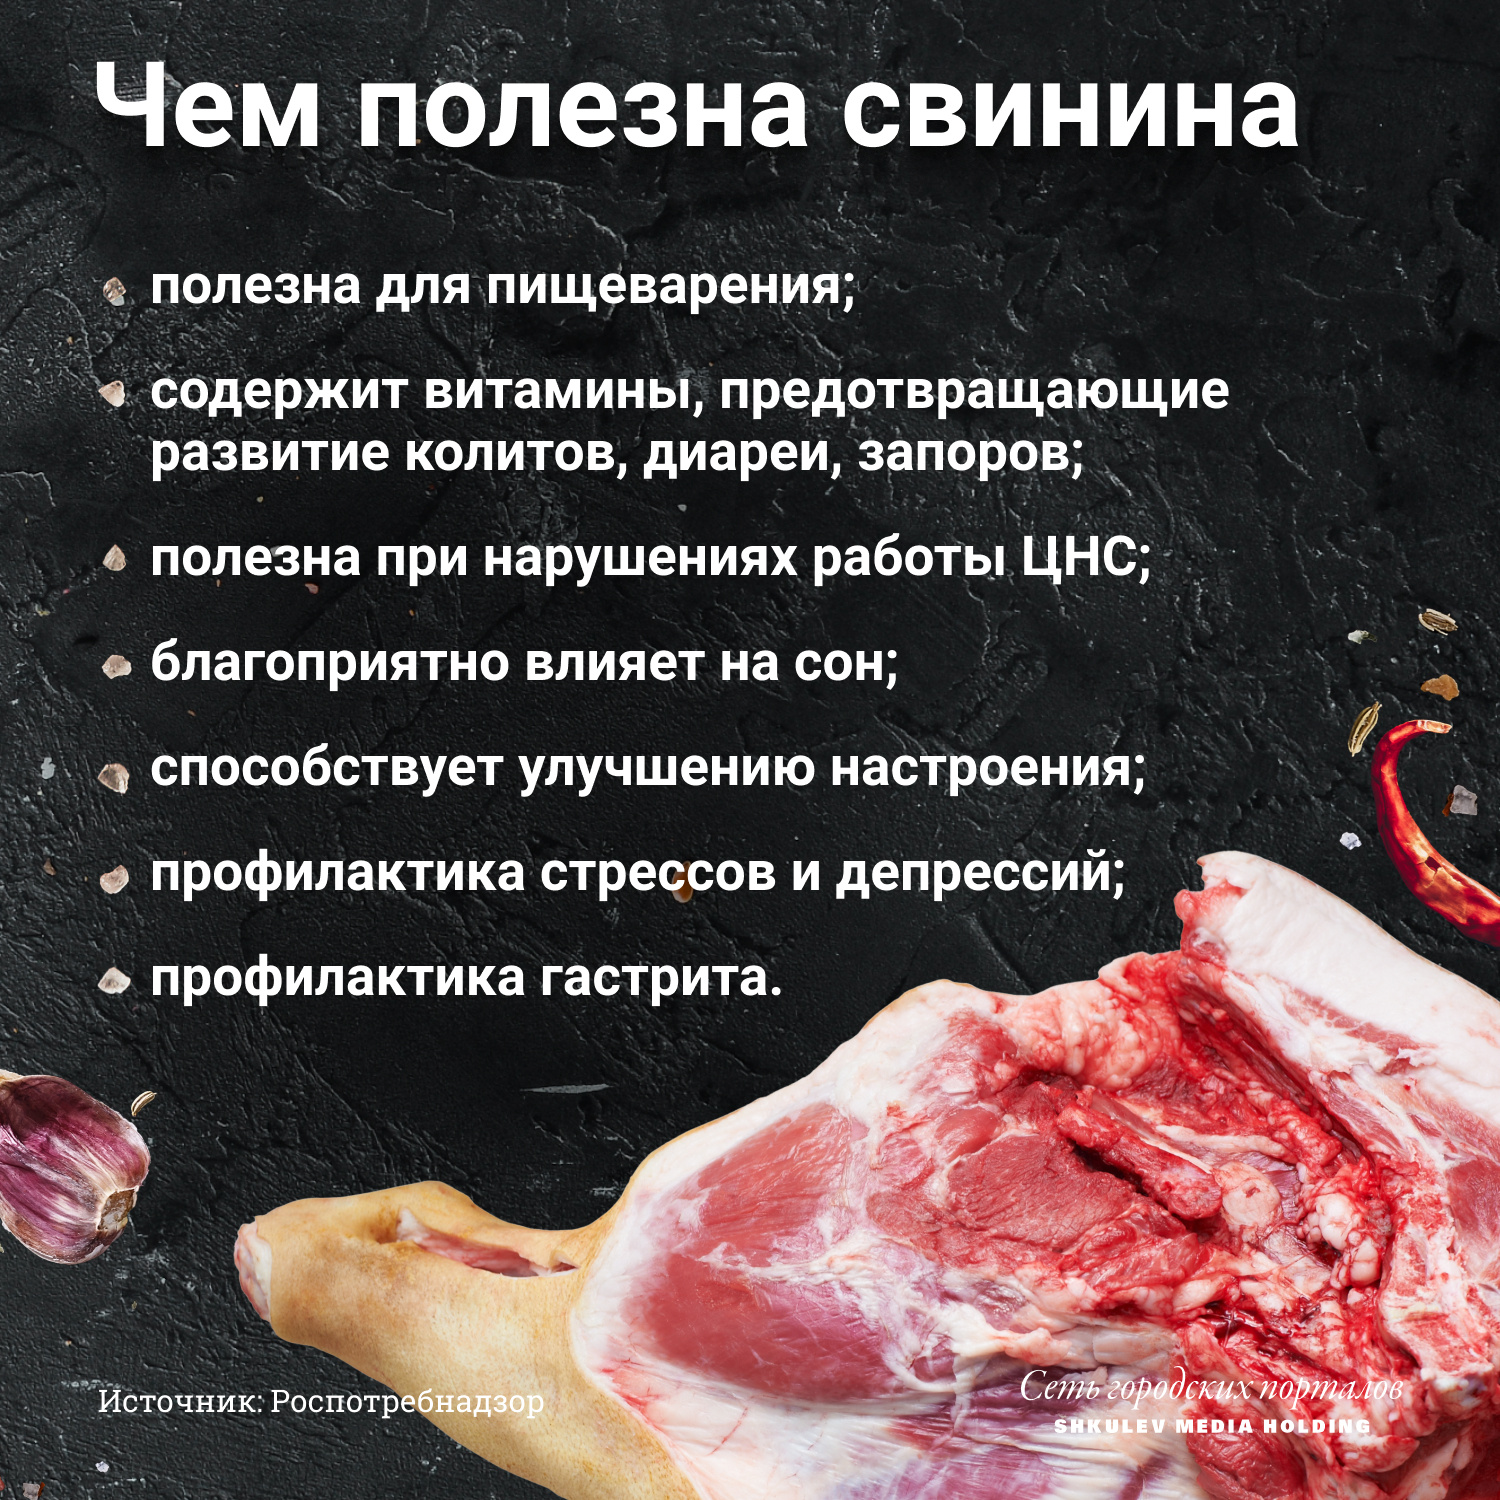 Причины темного цвета мяса свинины